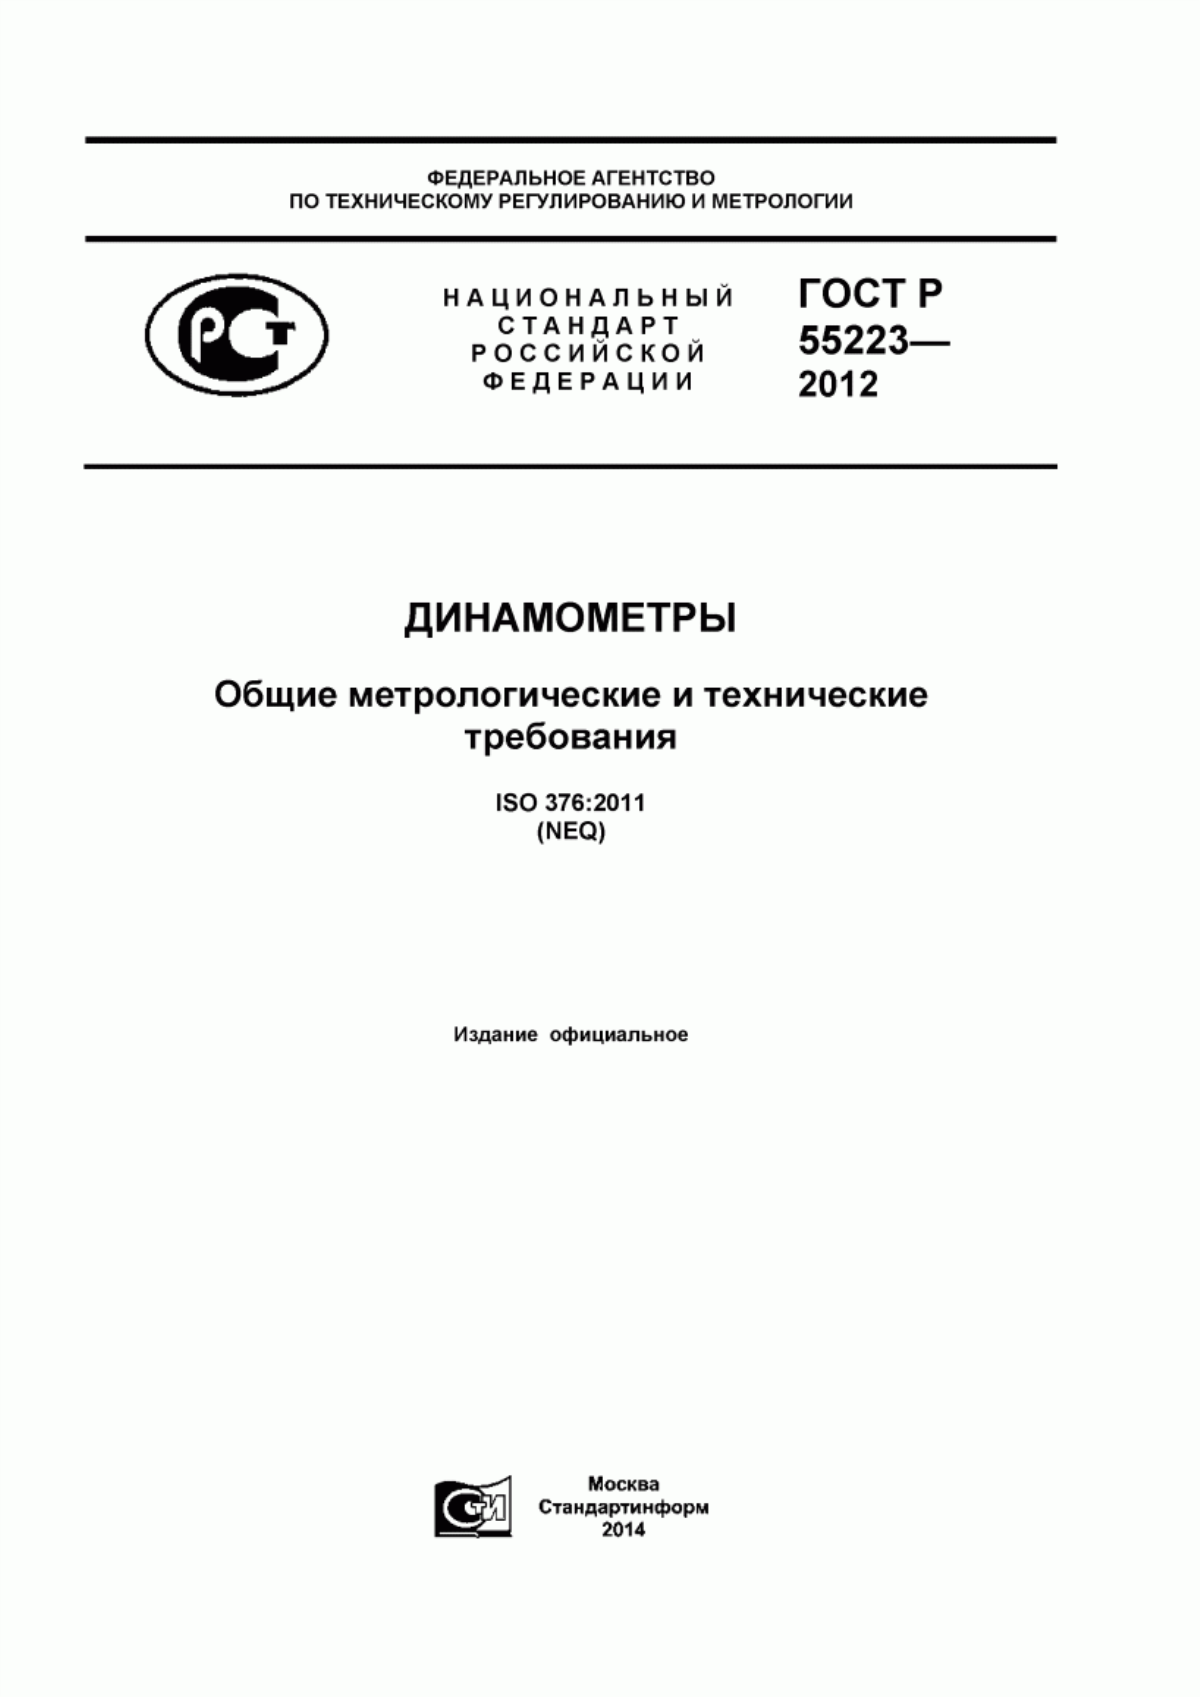 ГОСТ Р 55223-2012 Динамометры. Общие метрологические и технические требования